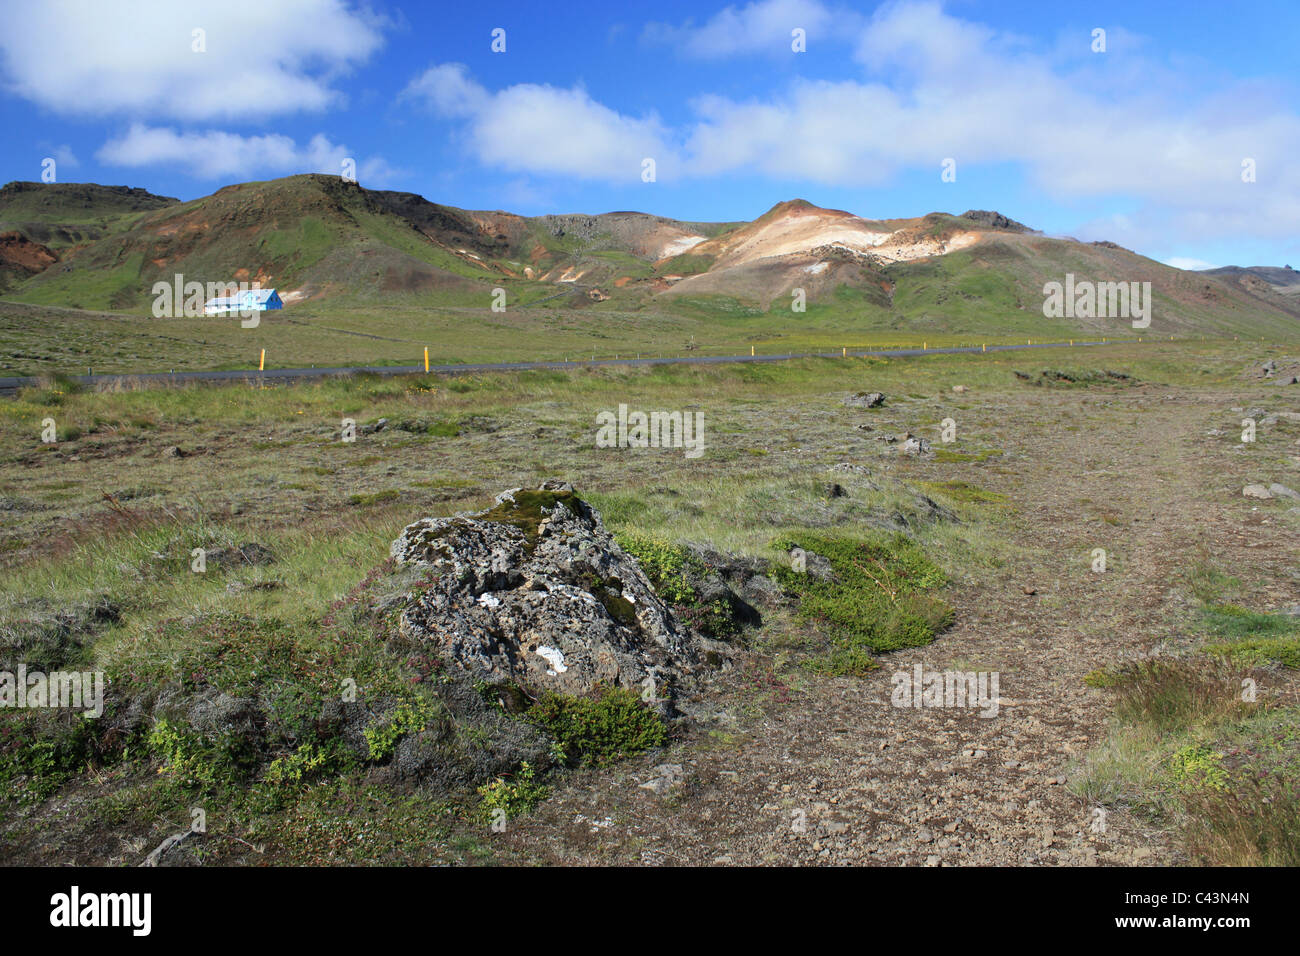 Volcan activo europa fotografías e imágenes de alta resolución - Alamy